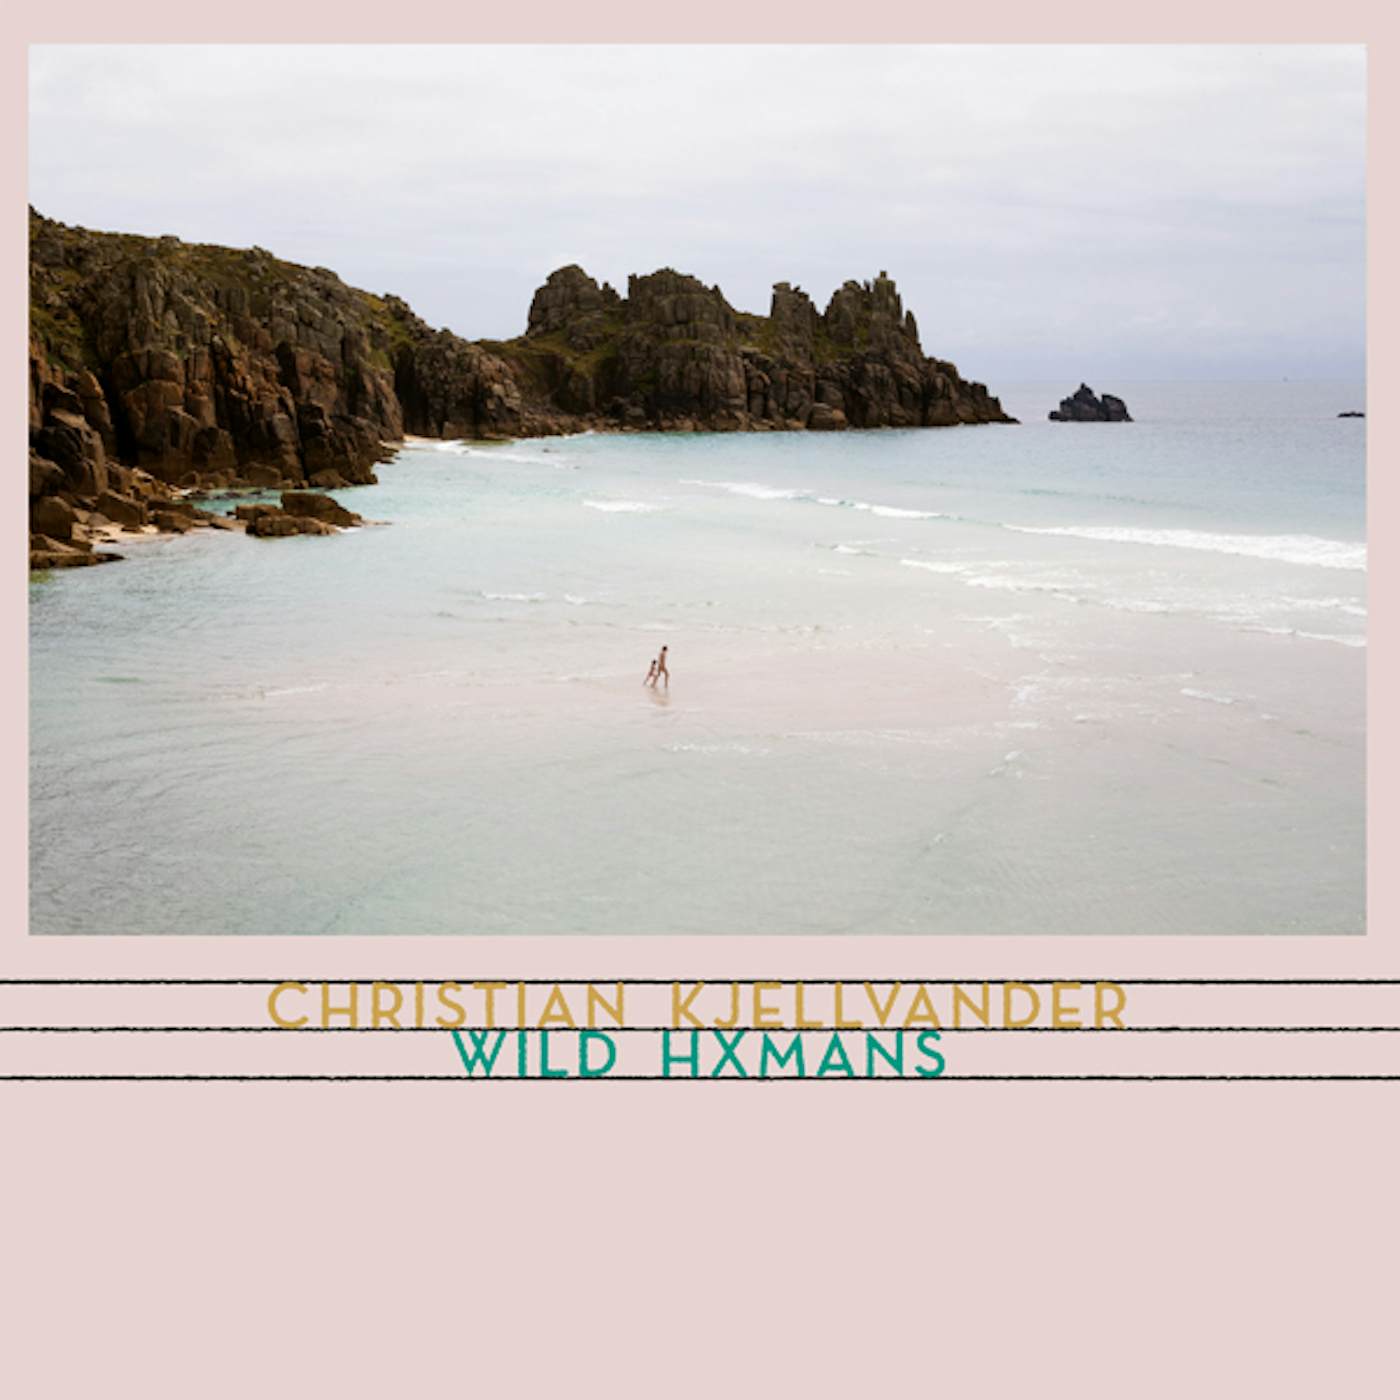 Christian Kjellvander Wild Hxmans Vinyl Record